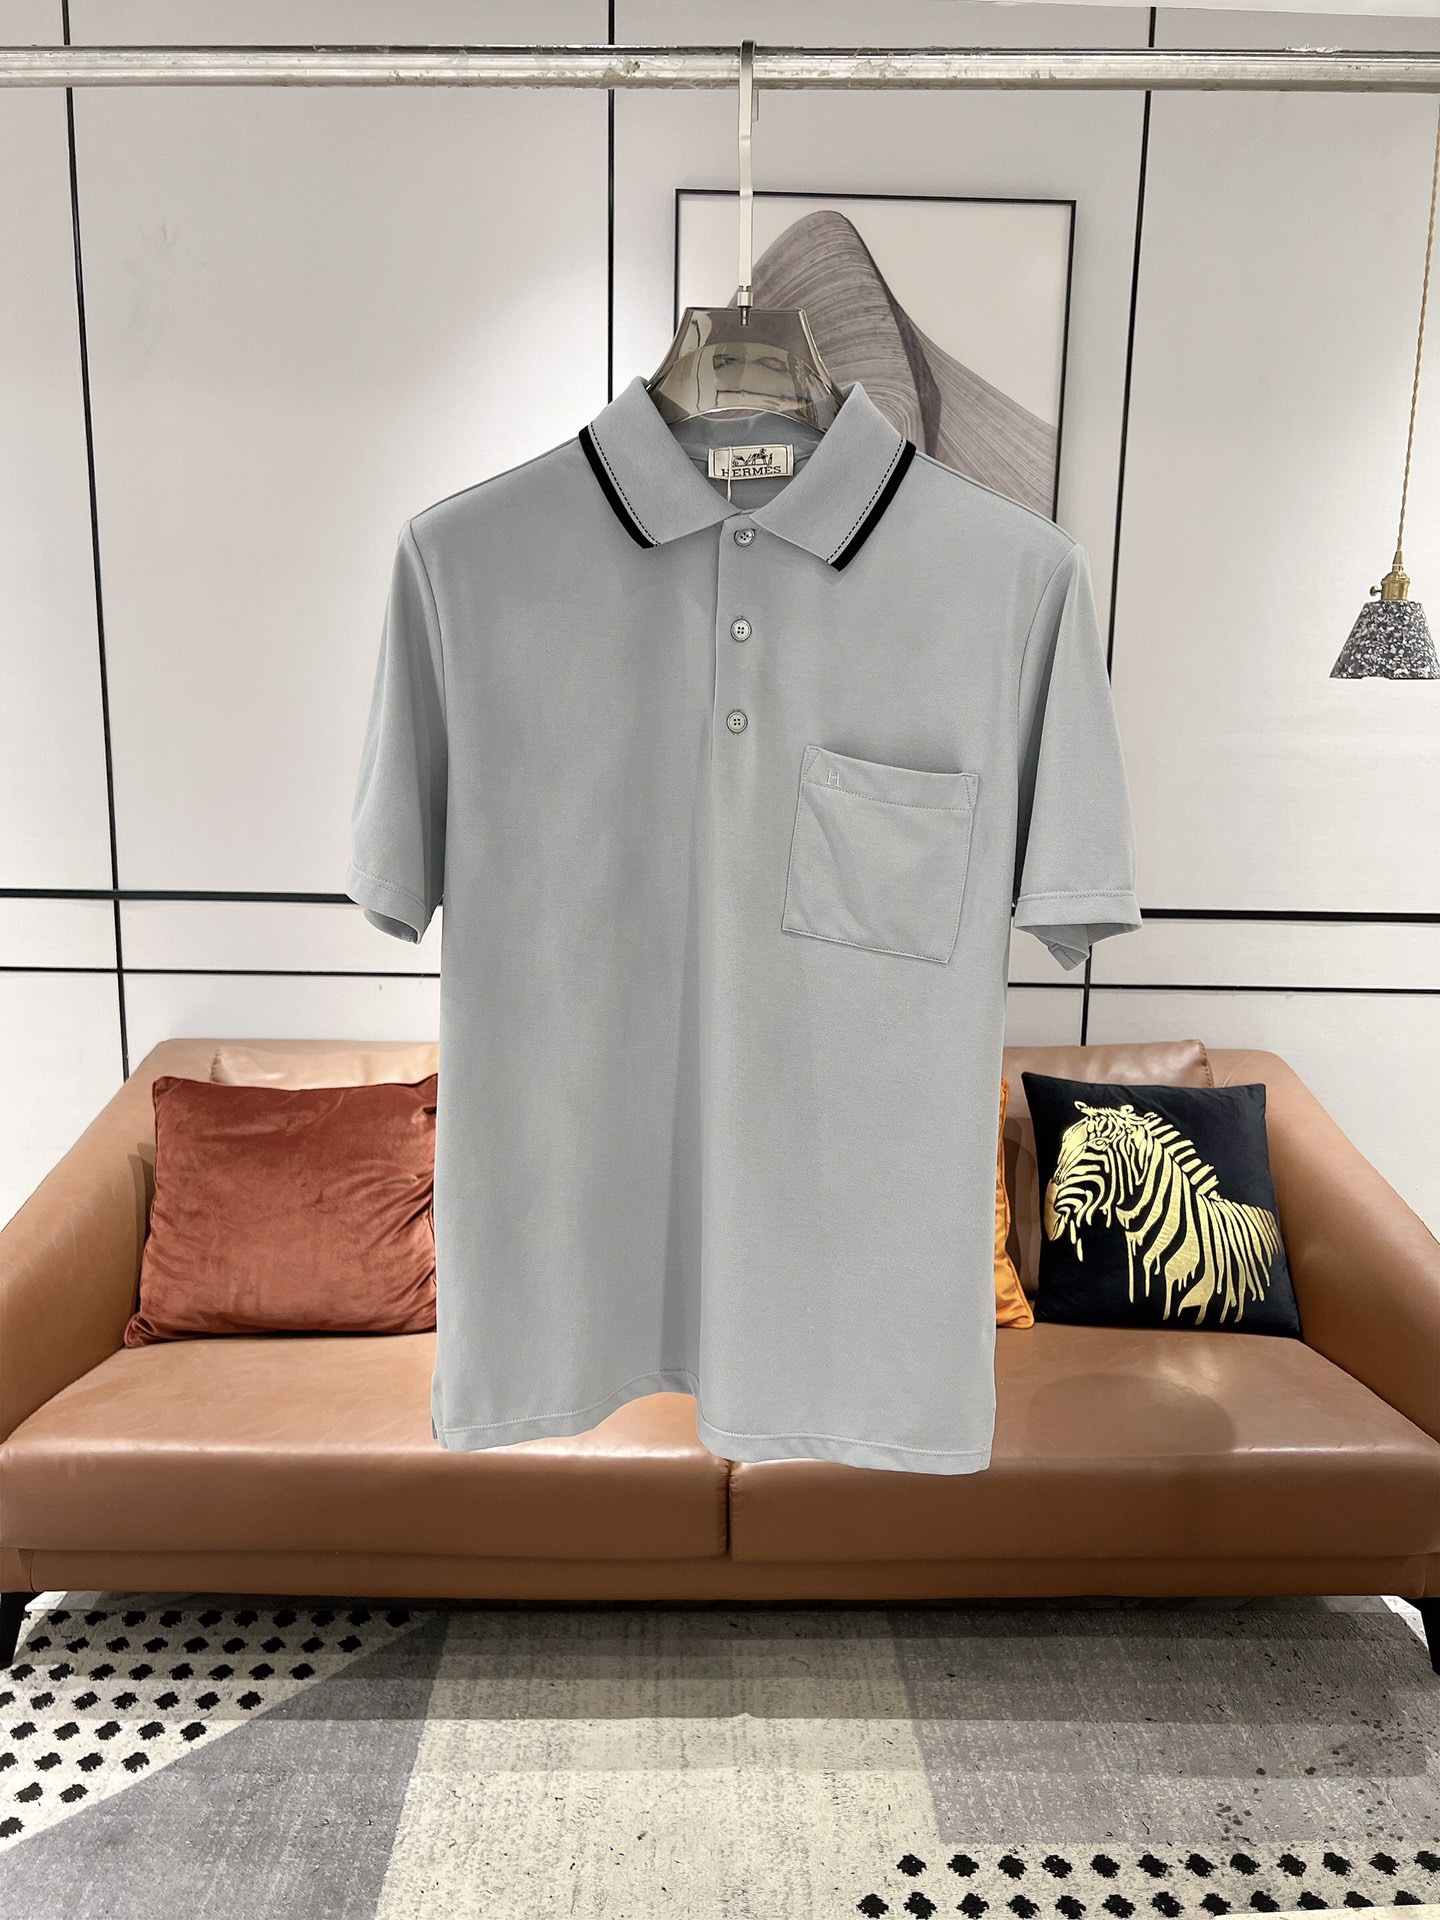 Hermes Vêtements T-Shirt Bleu profond Gris ciel Blanc Broderie de fleurs Hommes Coton Collection printemps – été Fashion Manches courtes